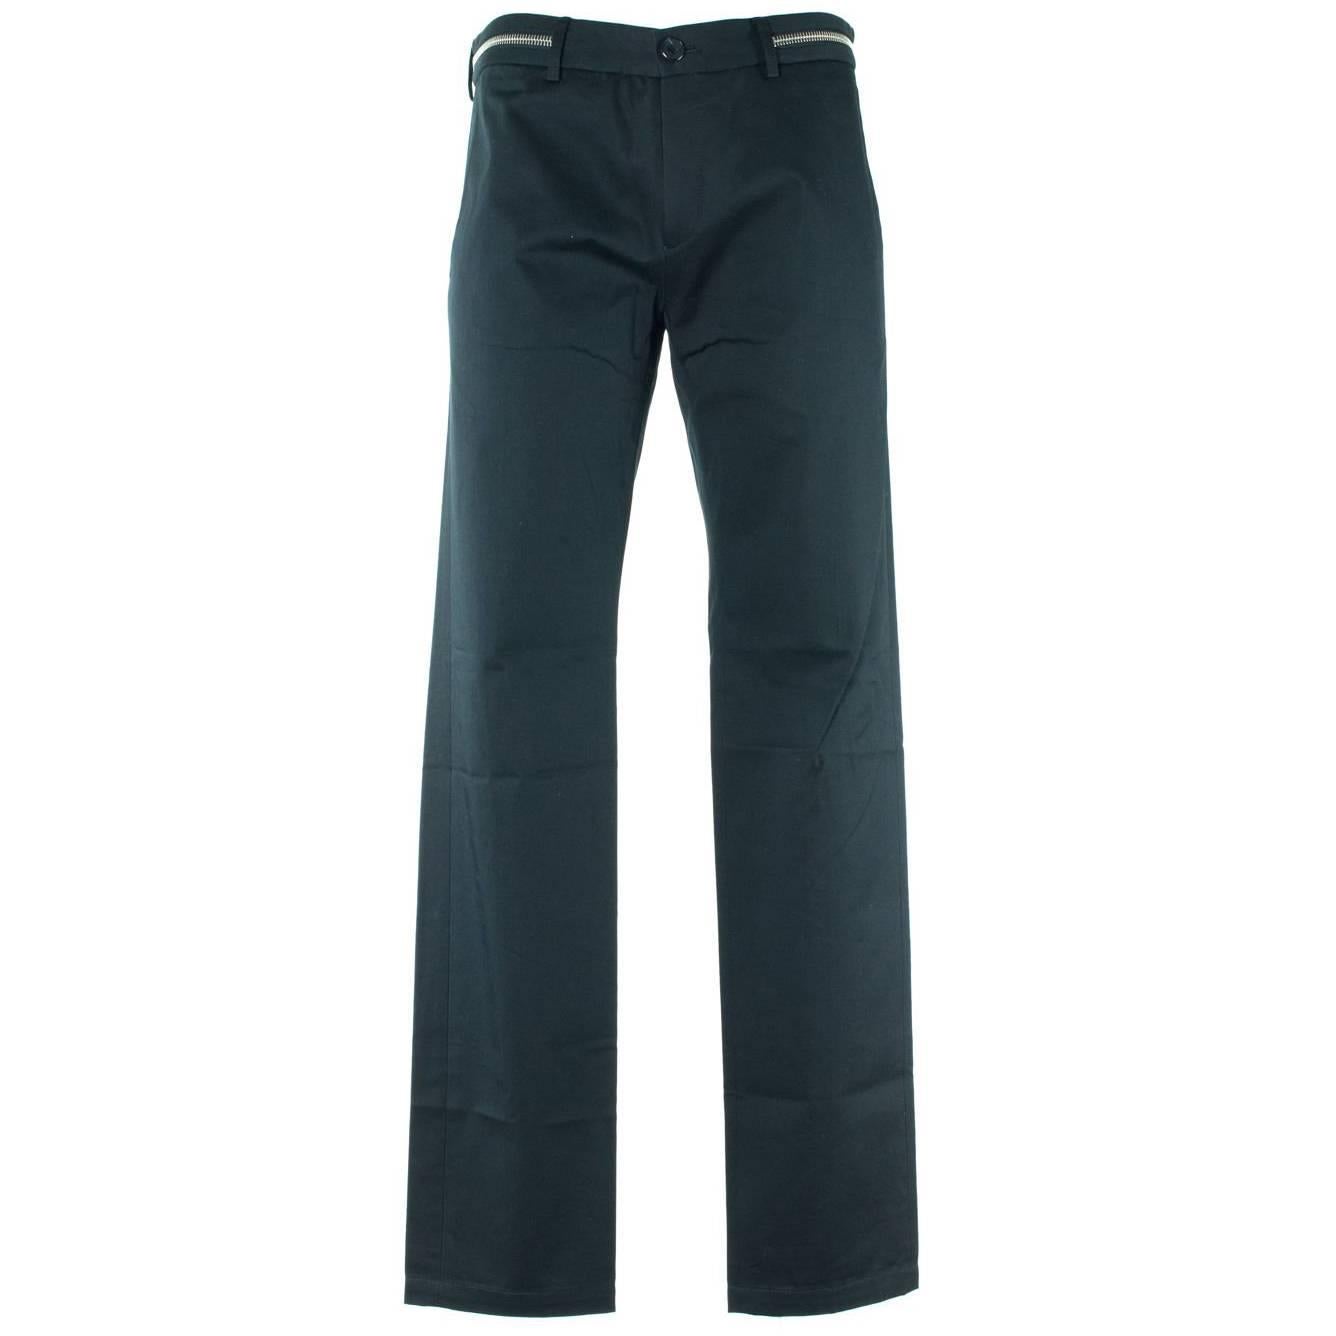 Givenchy Men's 100% Cotton Black W/ Zipper Pants For Sale